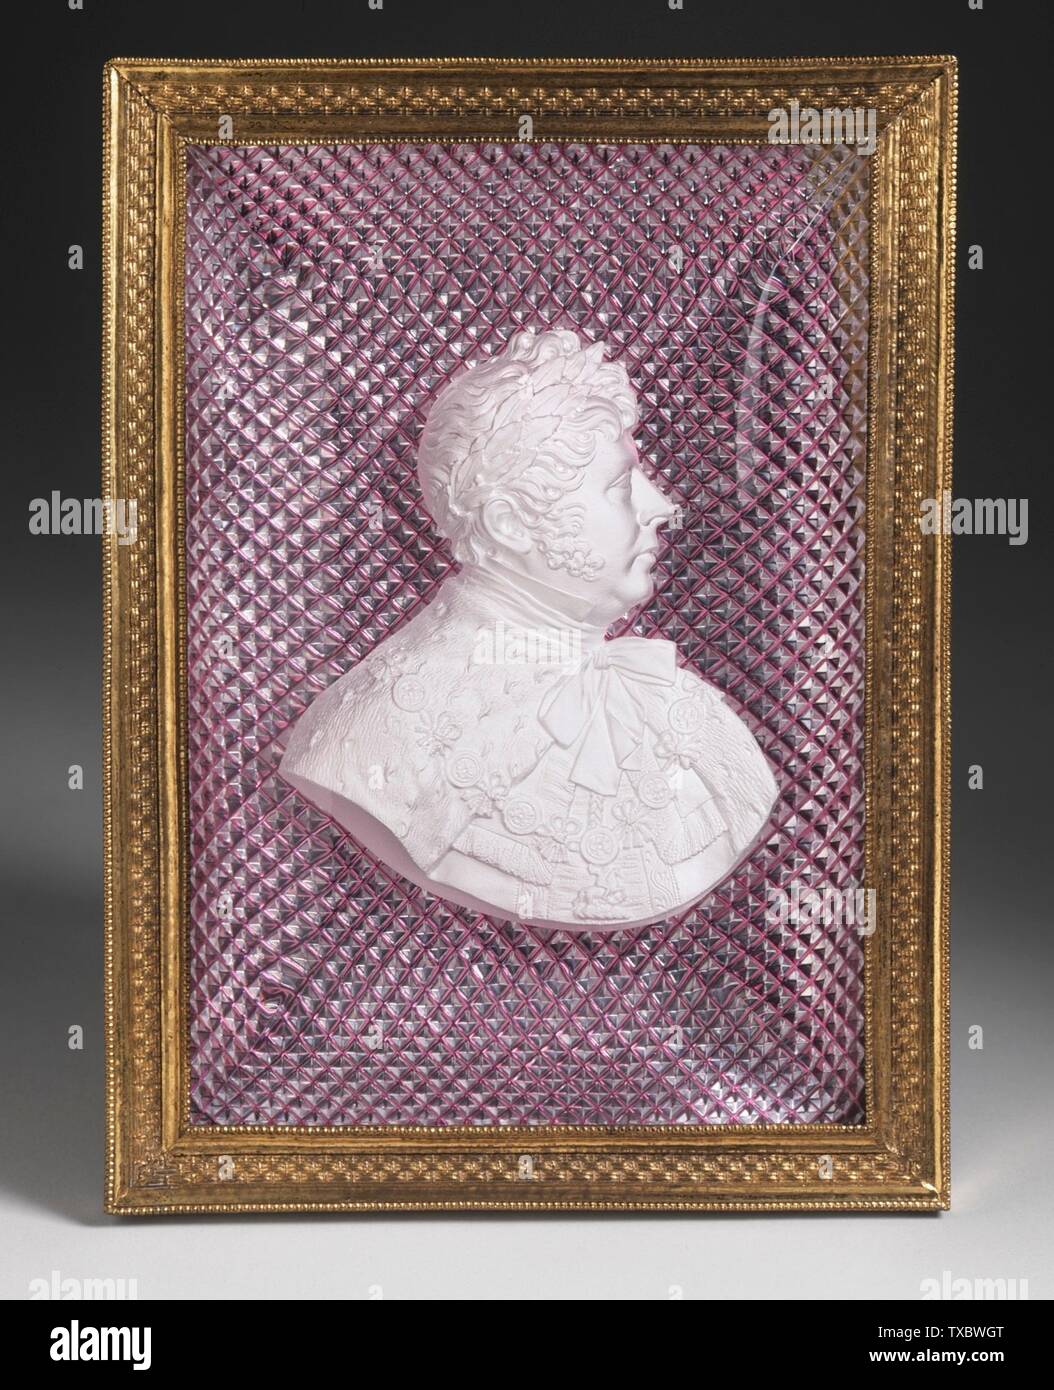 Placa retrato de George IV; Inglaterra, Mobiliario de alrededor de 1820-1830; accesorios vidrio de sulfuro, ormolu enmarcado: 7 1/8 x 5 1/4 x 1 pulg. (18.1 x 13.34 x 2.54 cm) Adquiridos con fondos proporcionados por la Dra. y la Sra. Donald Sears y Julia y Morton Winston (M.141.139) Artes Decorativas y Diseño; entre circa 1820 y circa 1830 fecha QS:P571,+1850-00-00T00:00:00Z/7,P1319,+1820-00-00T00:00:00Z/1830 00, P140000-00 Foto de stock